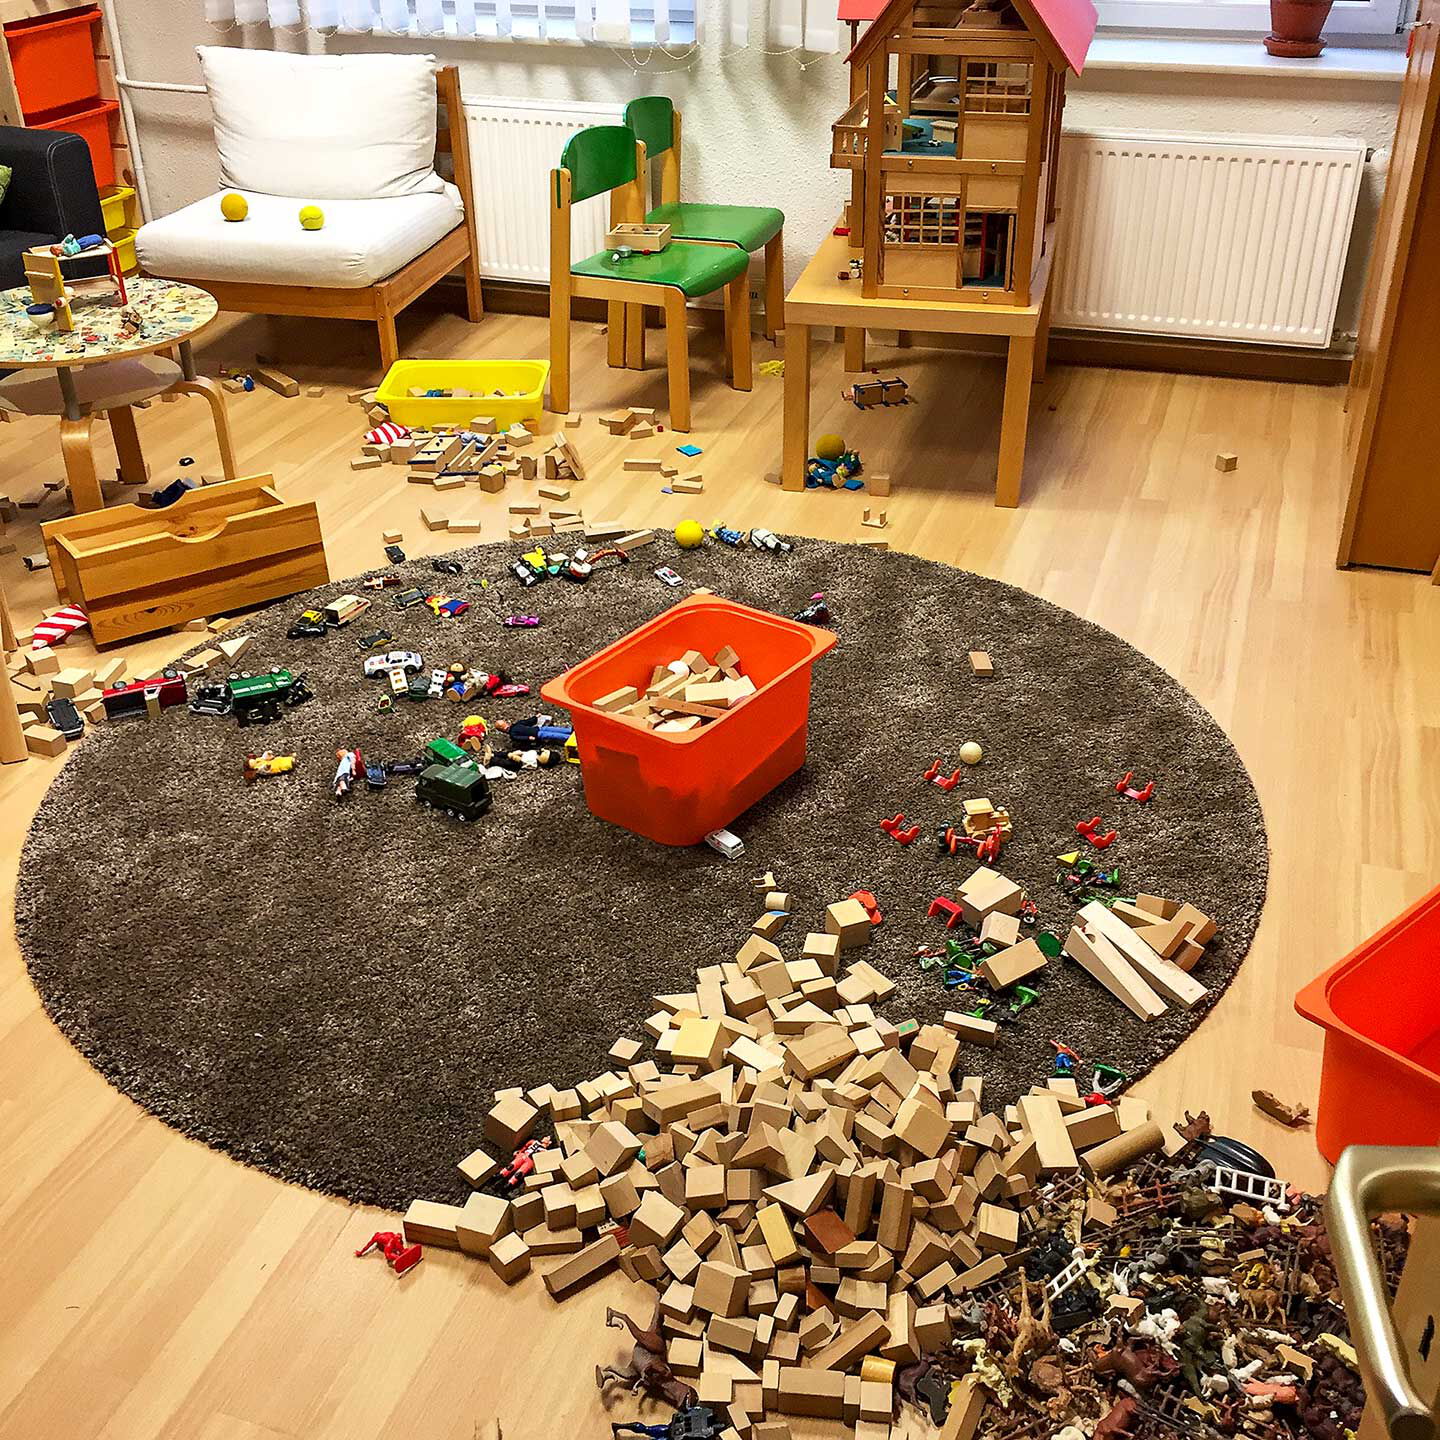 Ein großer Spielteppich mit Baustein, Tieren, Autos und vielen Baumaterialien.